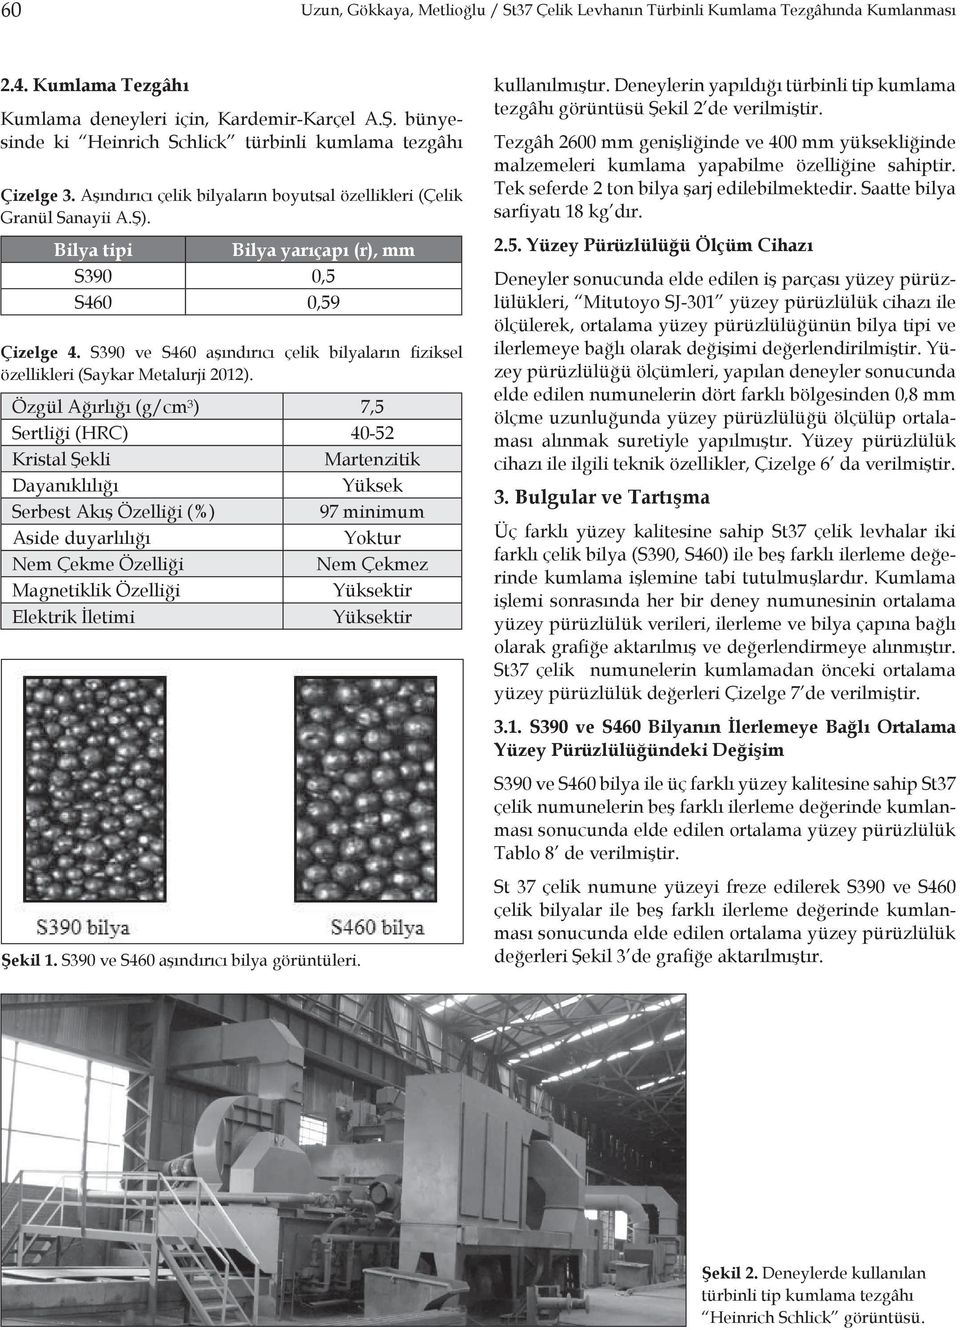 Bilya tipi Bilya yarıçapı (r), mm S390 0,5 S460 0,59 Çizelge 4. S390 ve S460 aşındırıcı çelik bilyaların fiziksel özellikleri (Saykar Metalurji 2012).